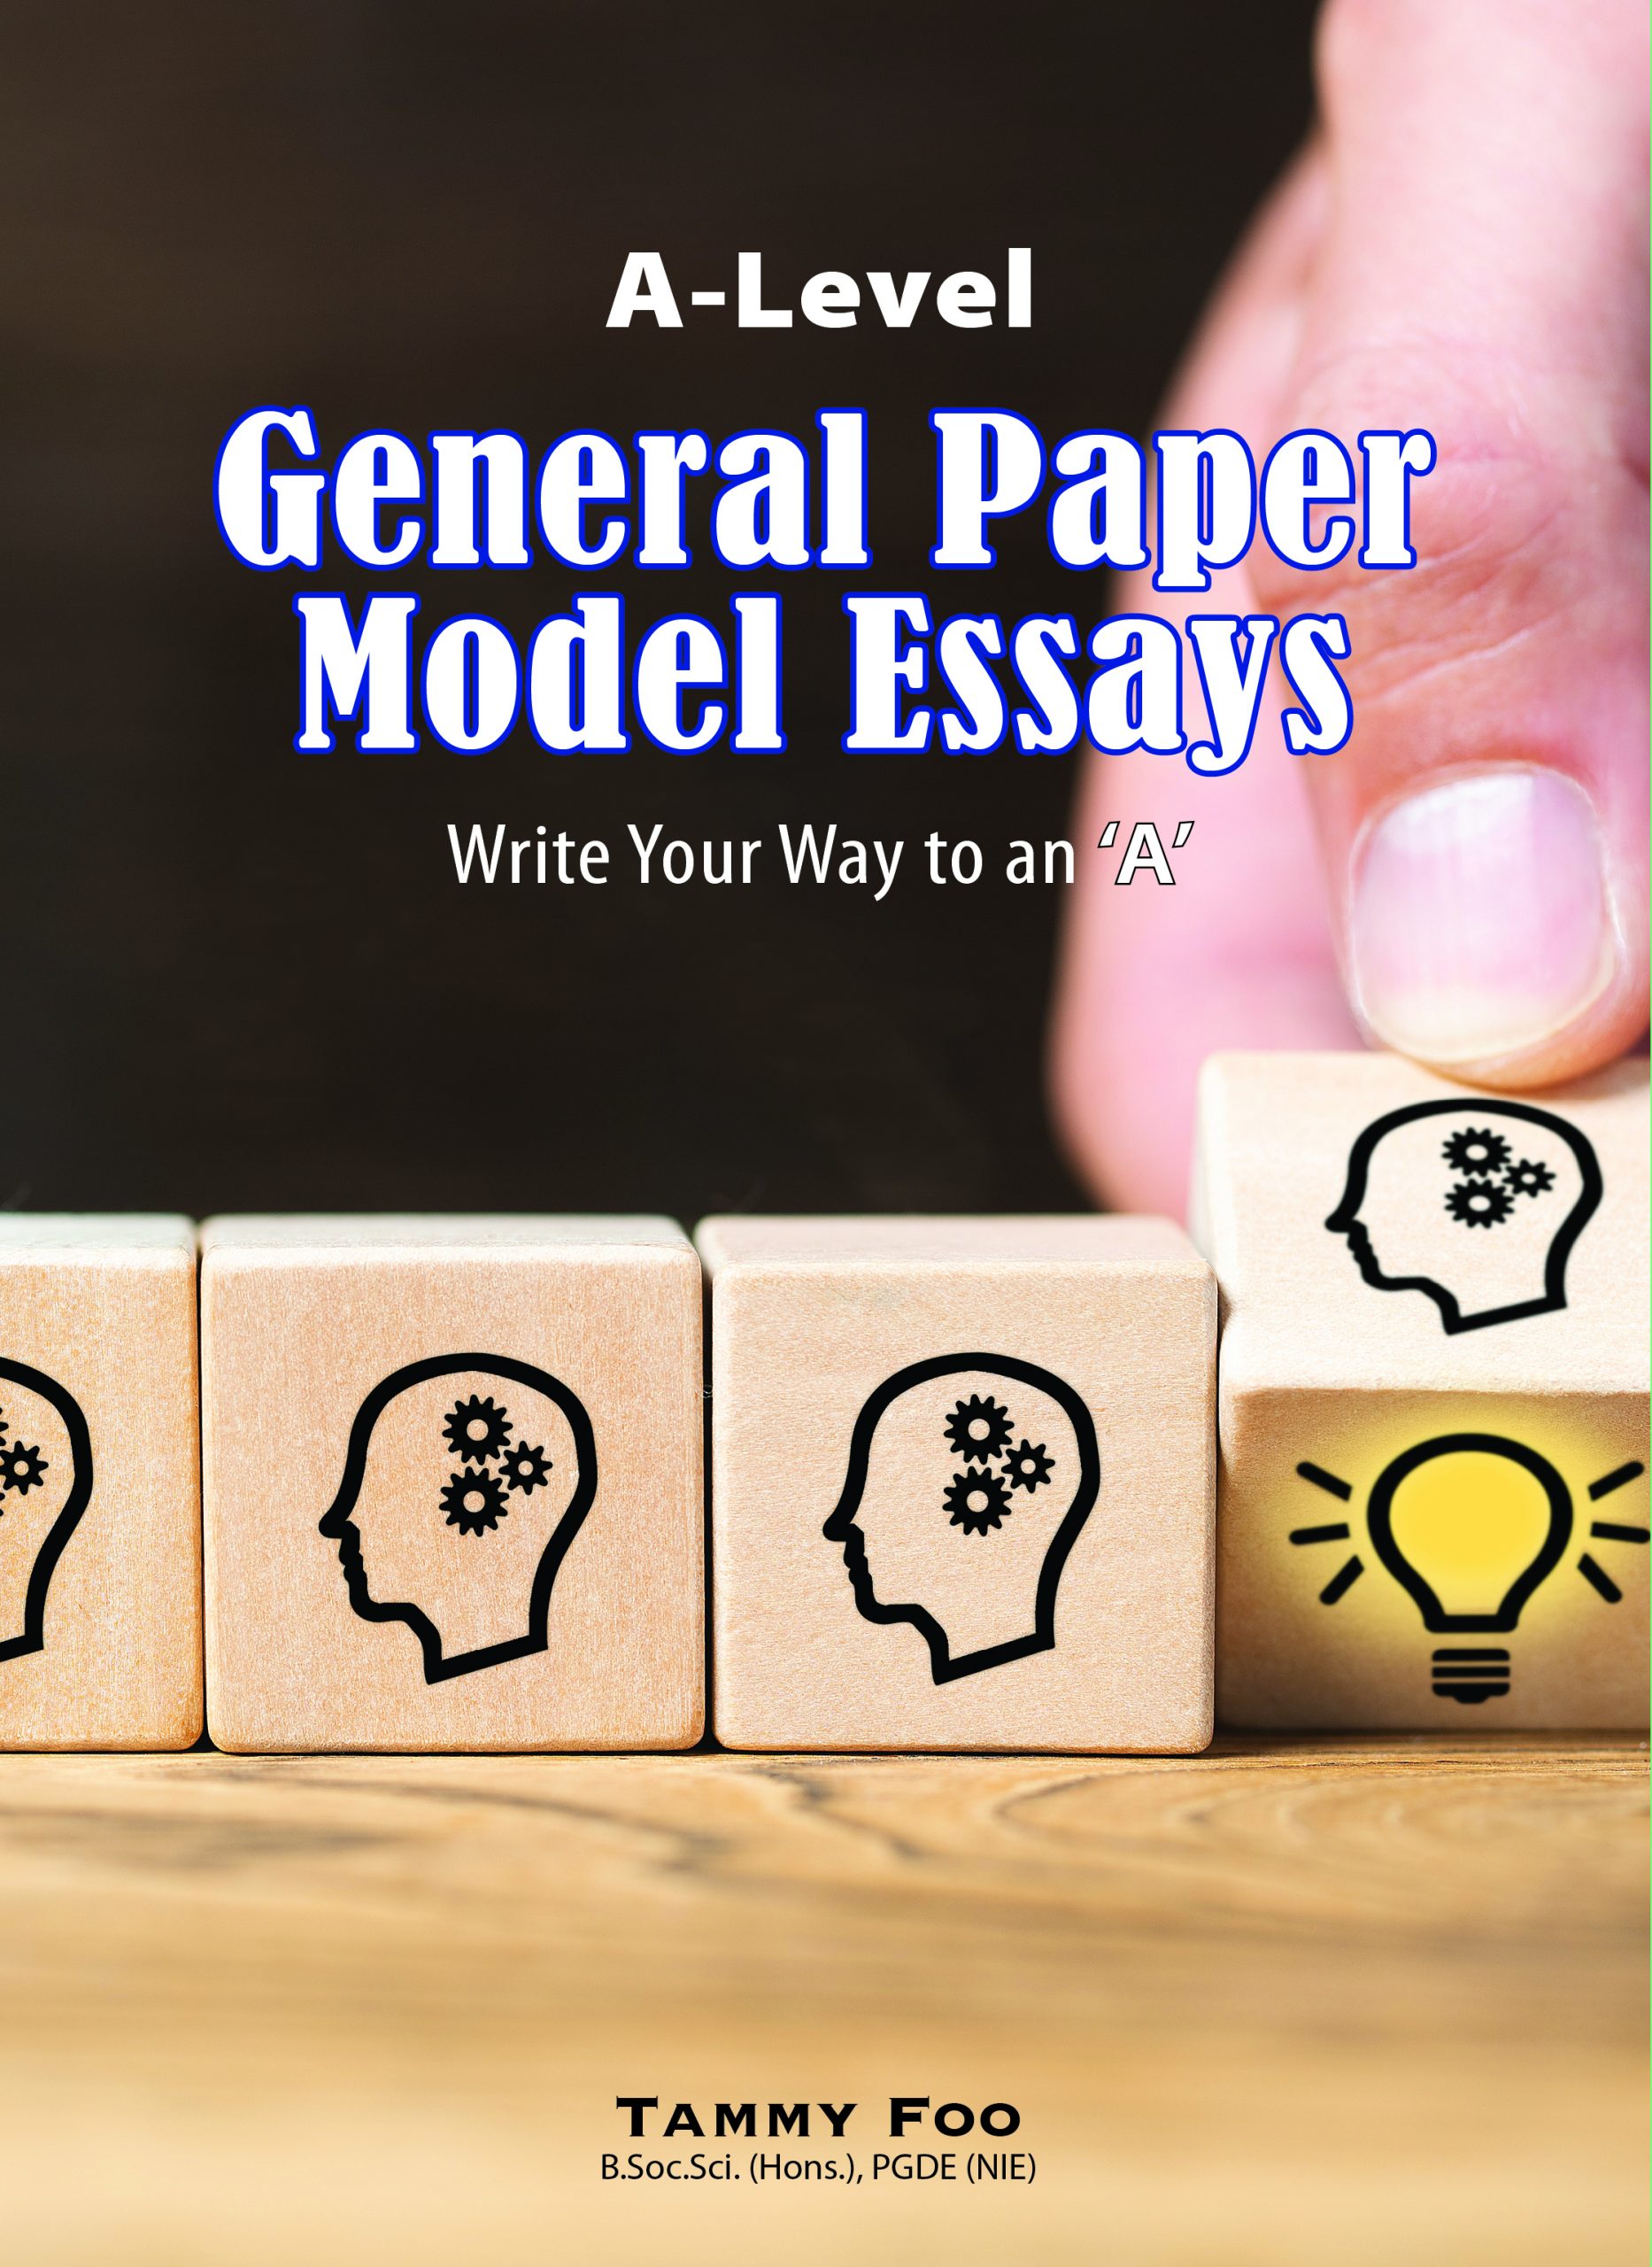 gp model essays on media